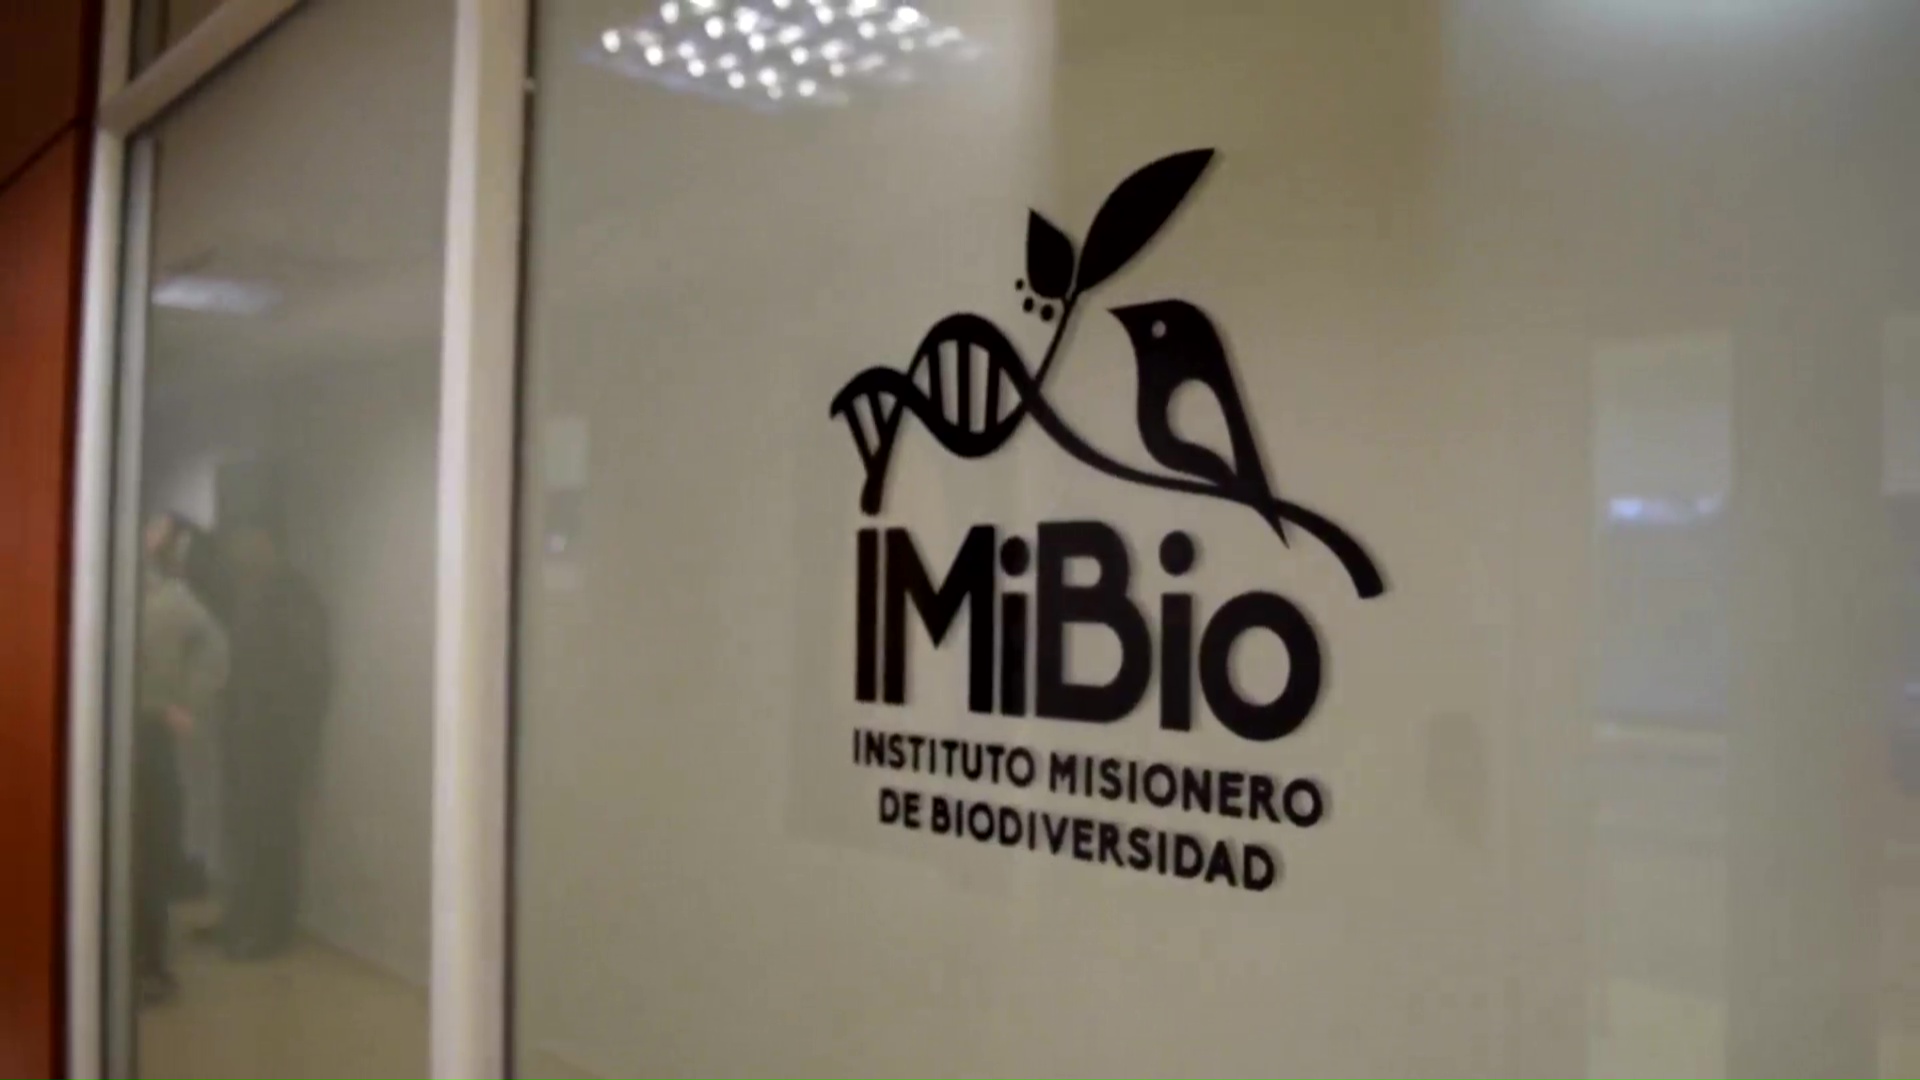 Passalacqua inauguró el Instituto Misionero de Biodiversidad en Iguazú